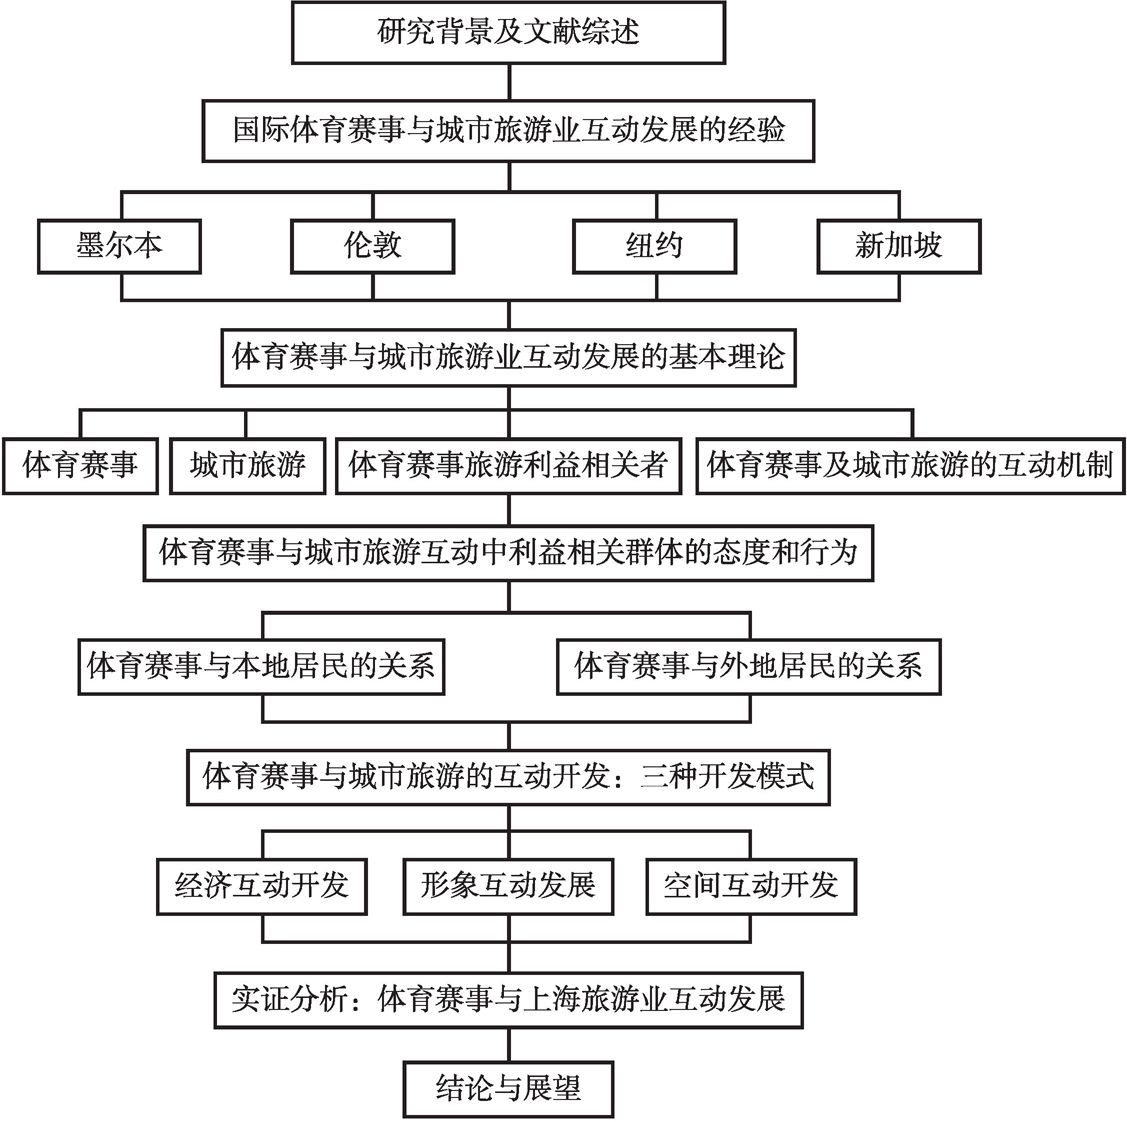 图1-1 本书框架结构图